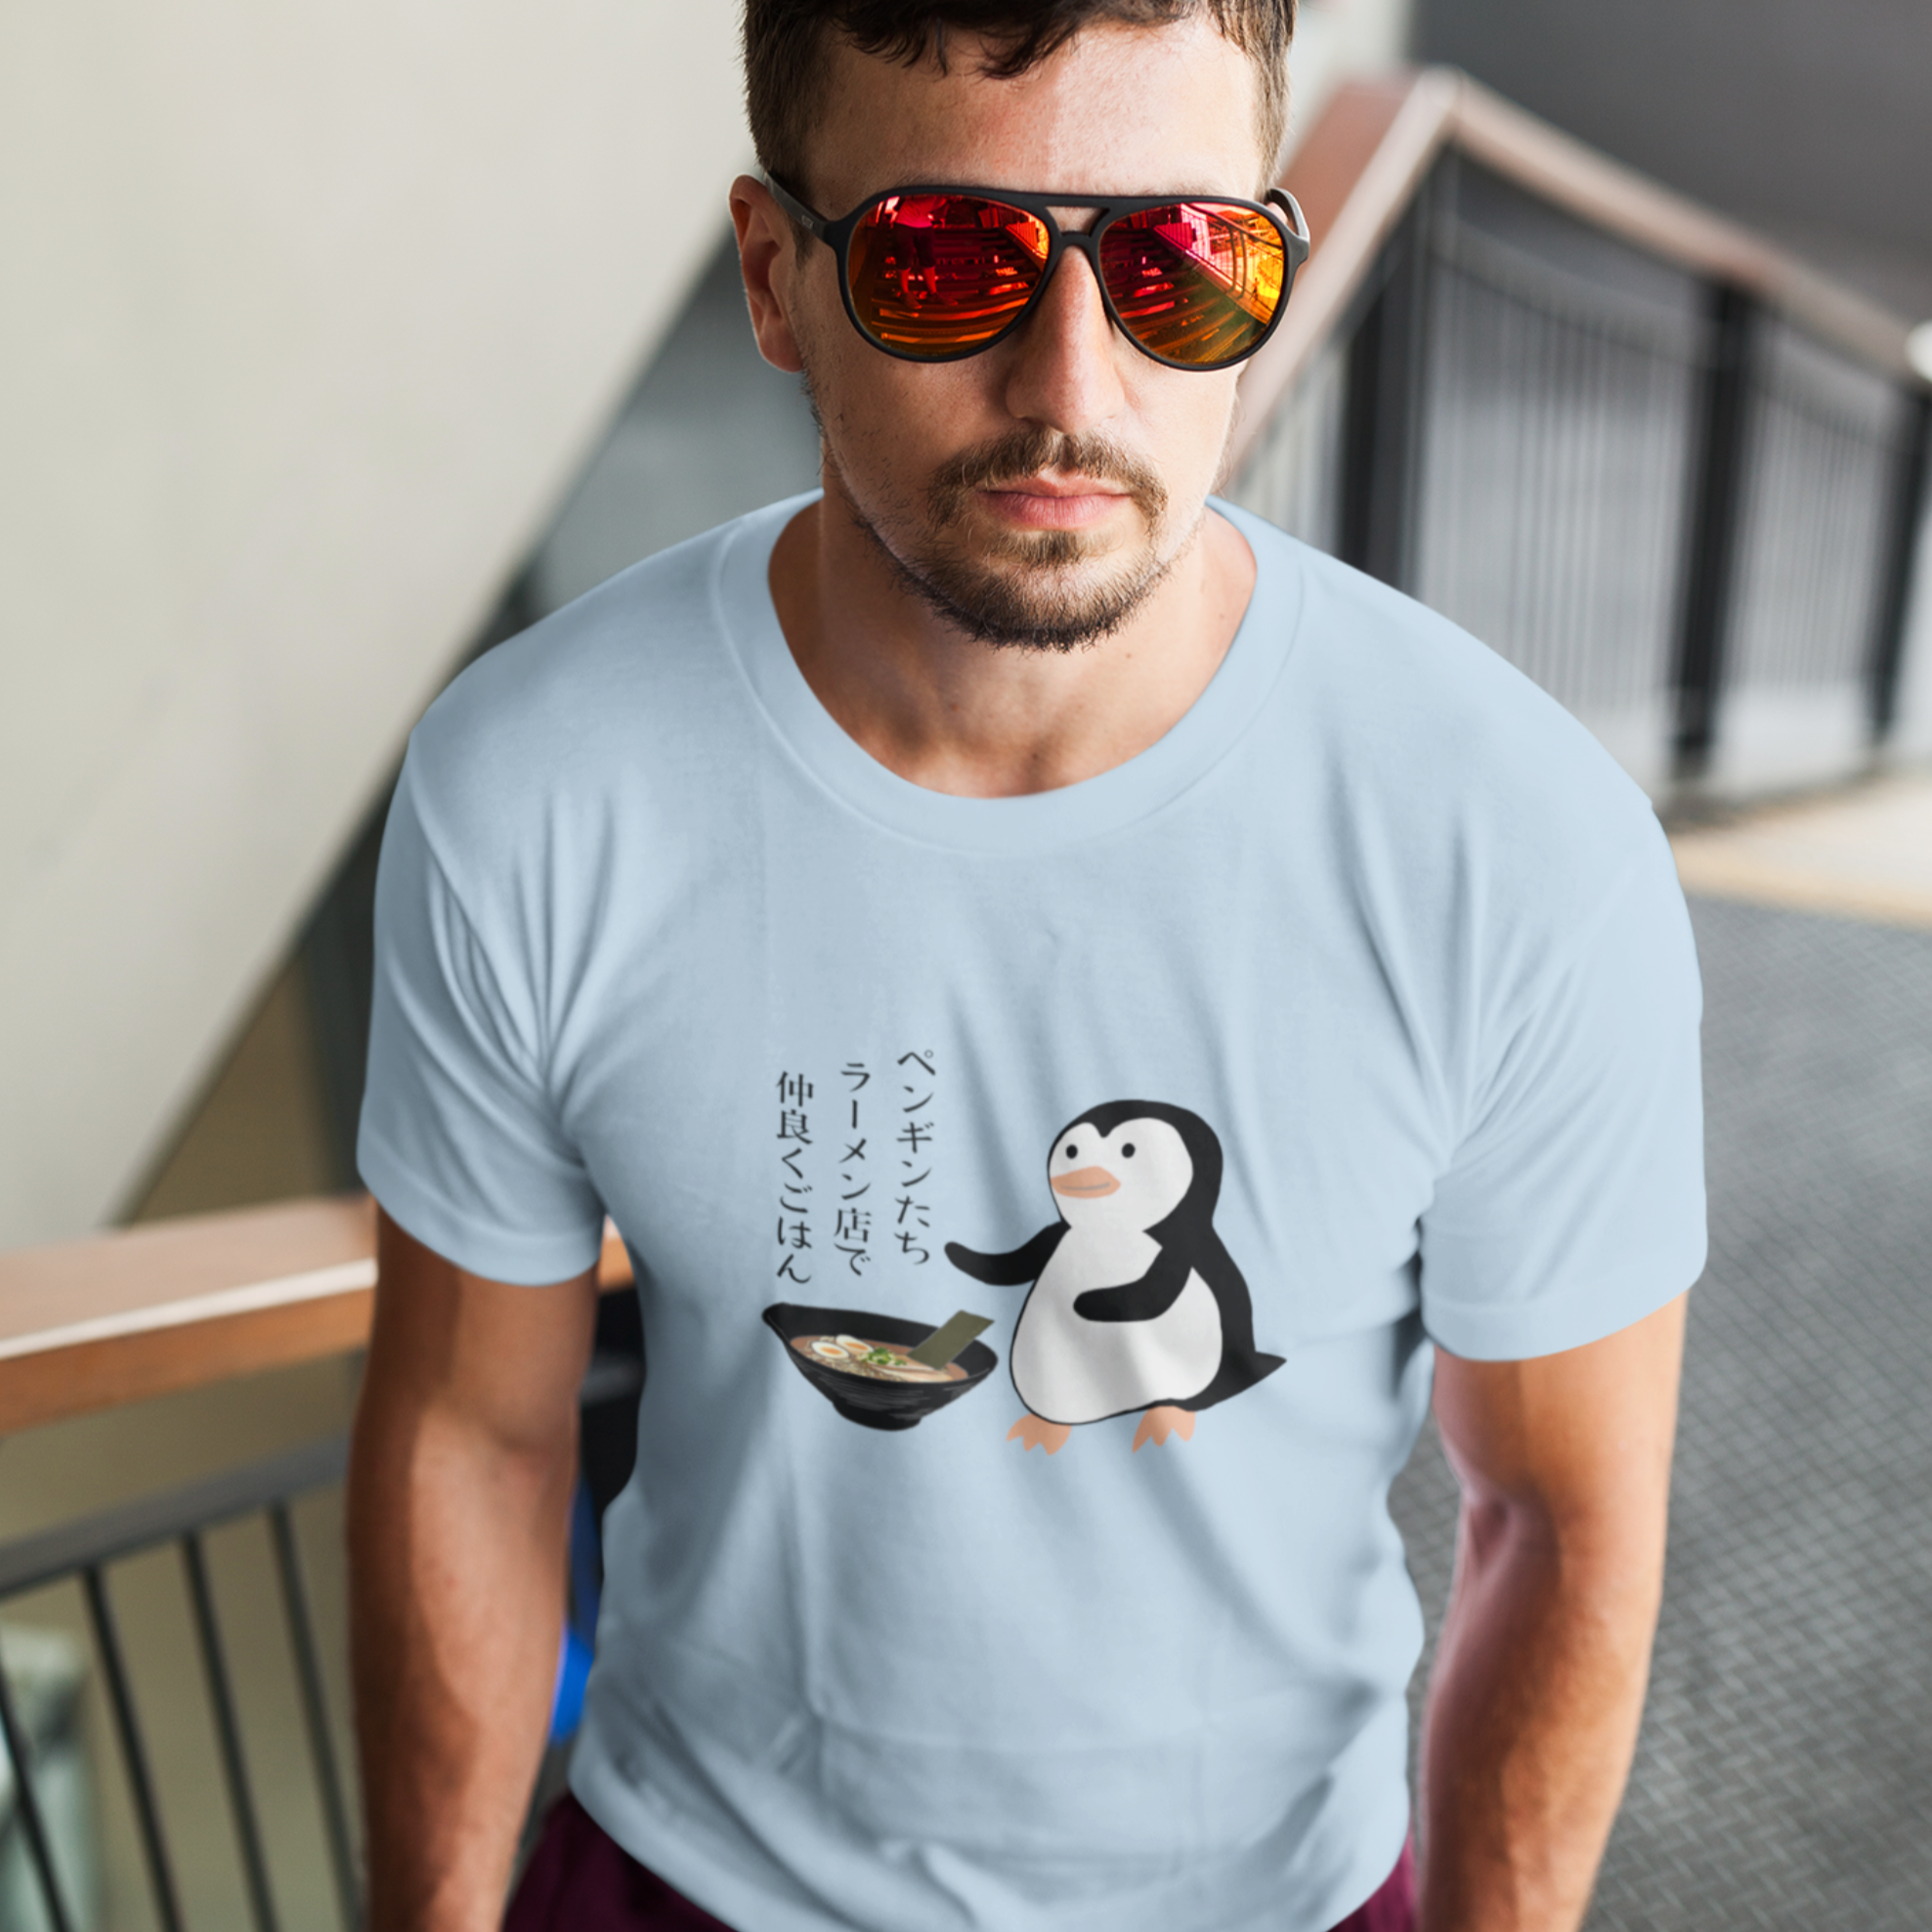 Ramen T-shirt: Penguins Gathering for a Delicious Ramen Feast - Japanese Haiku and Art Inspired Shirt